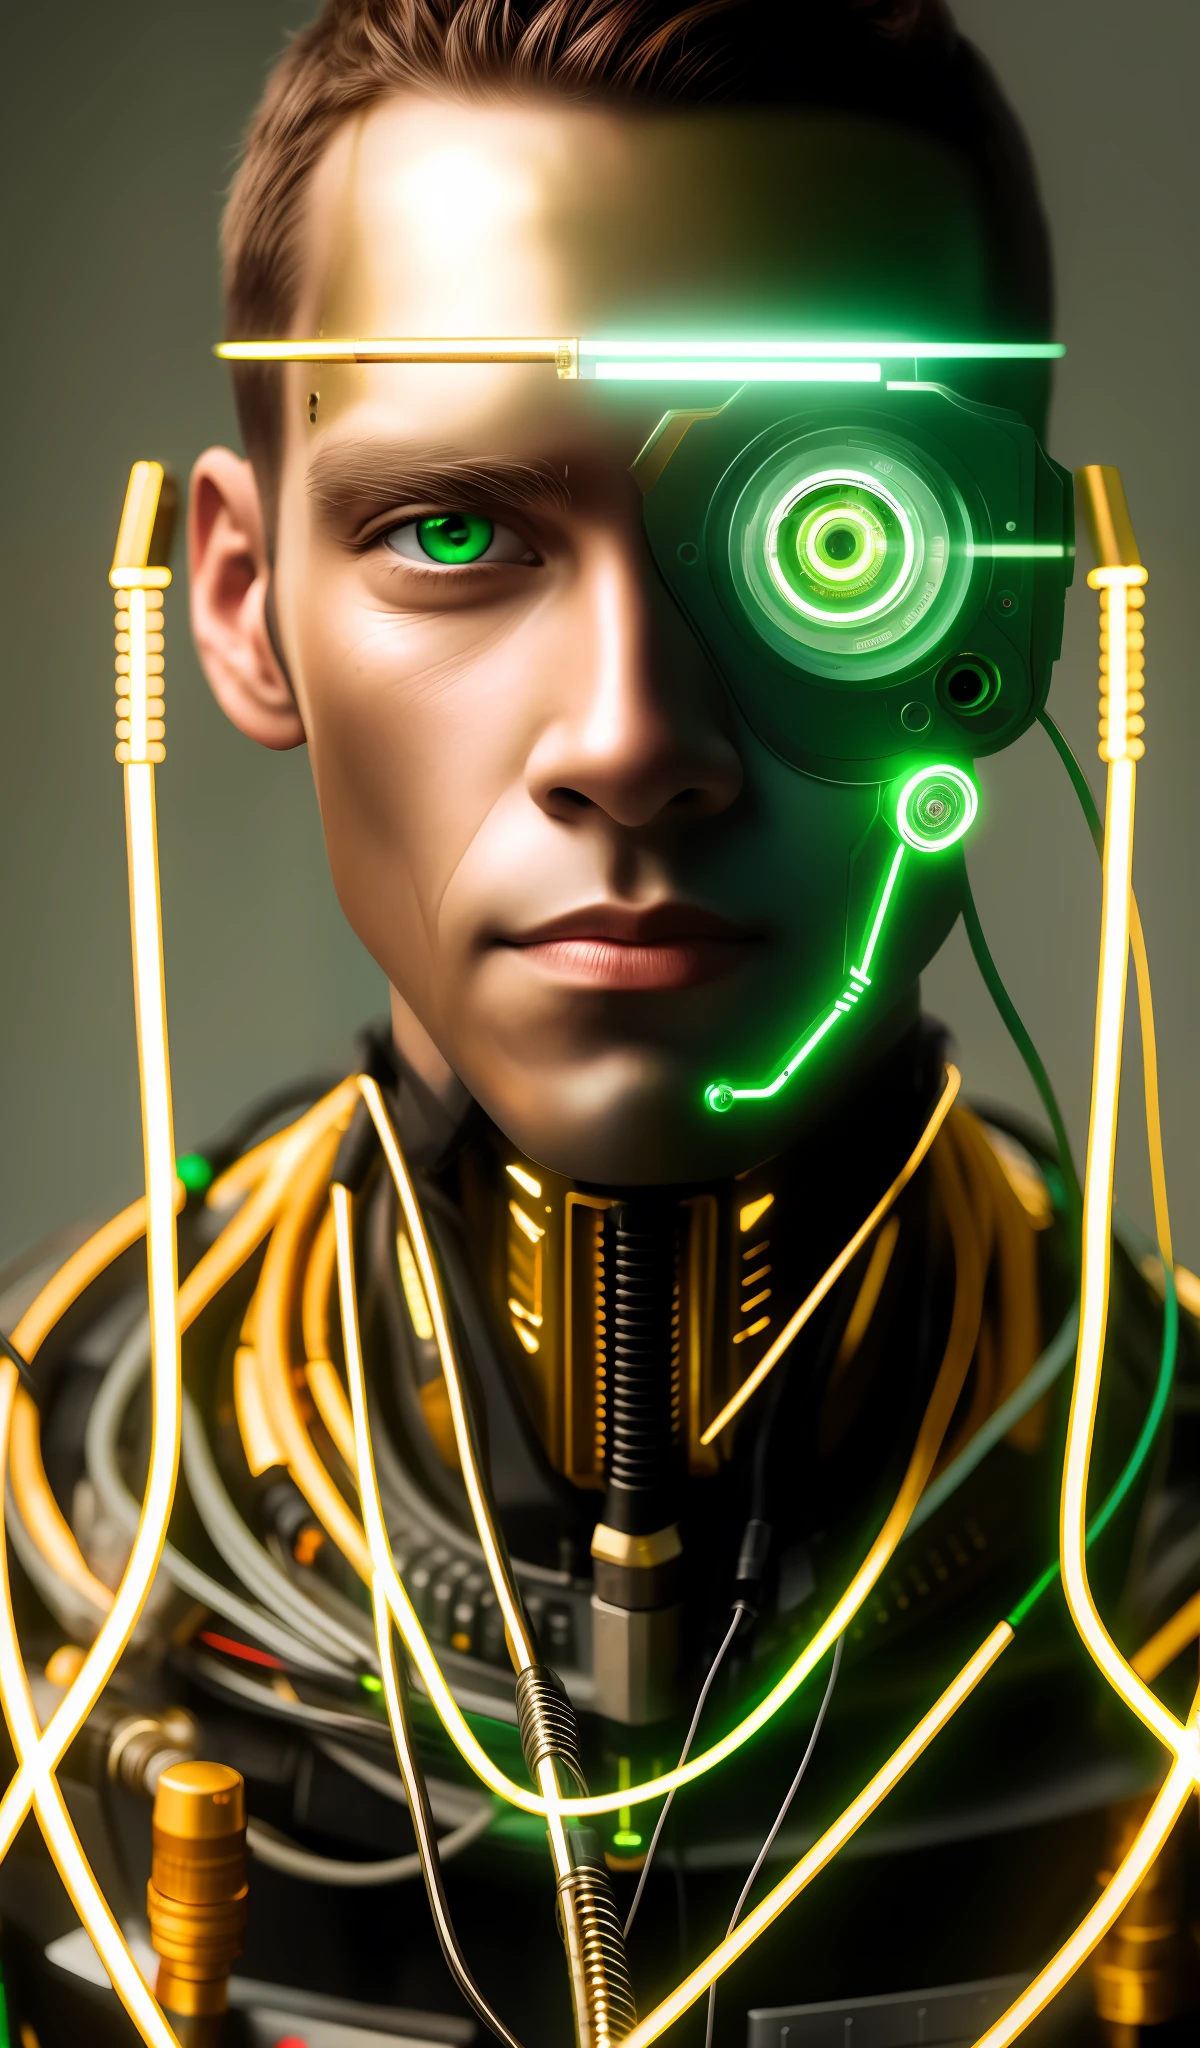 機器人中景, 綠眼睛, 工作服, 模特兒臉, 裸露的電線, 金油從生鏽的電線中逸出